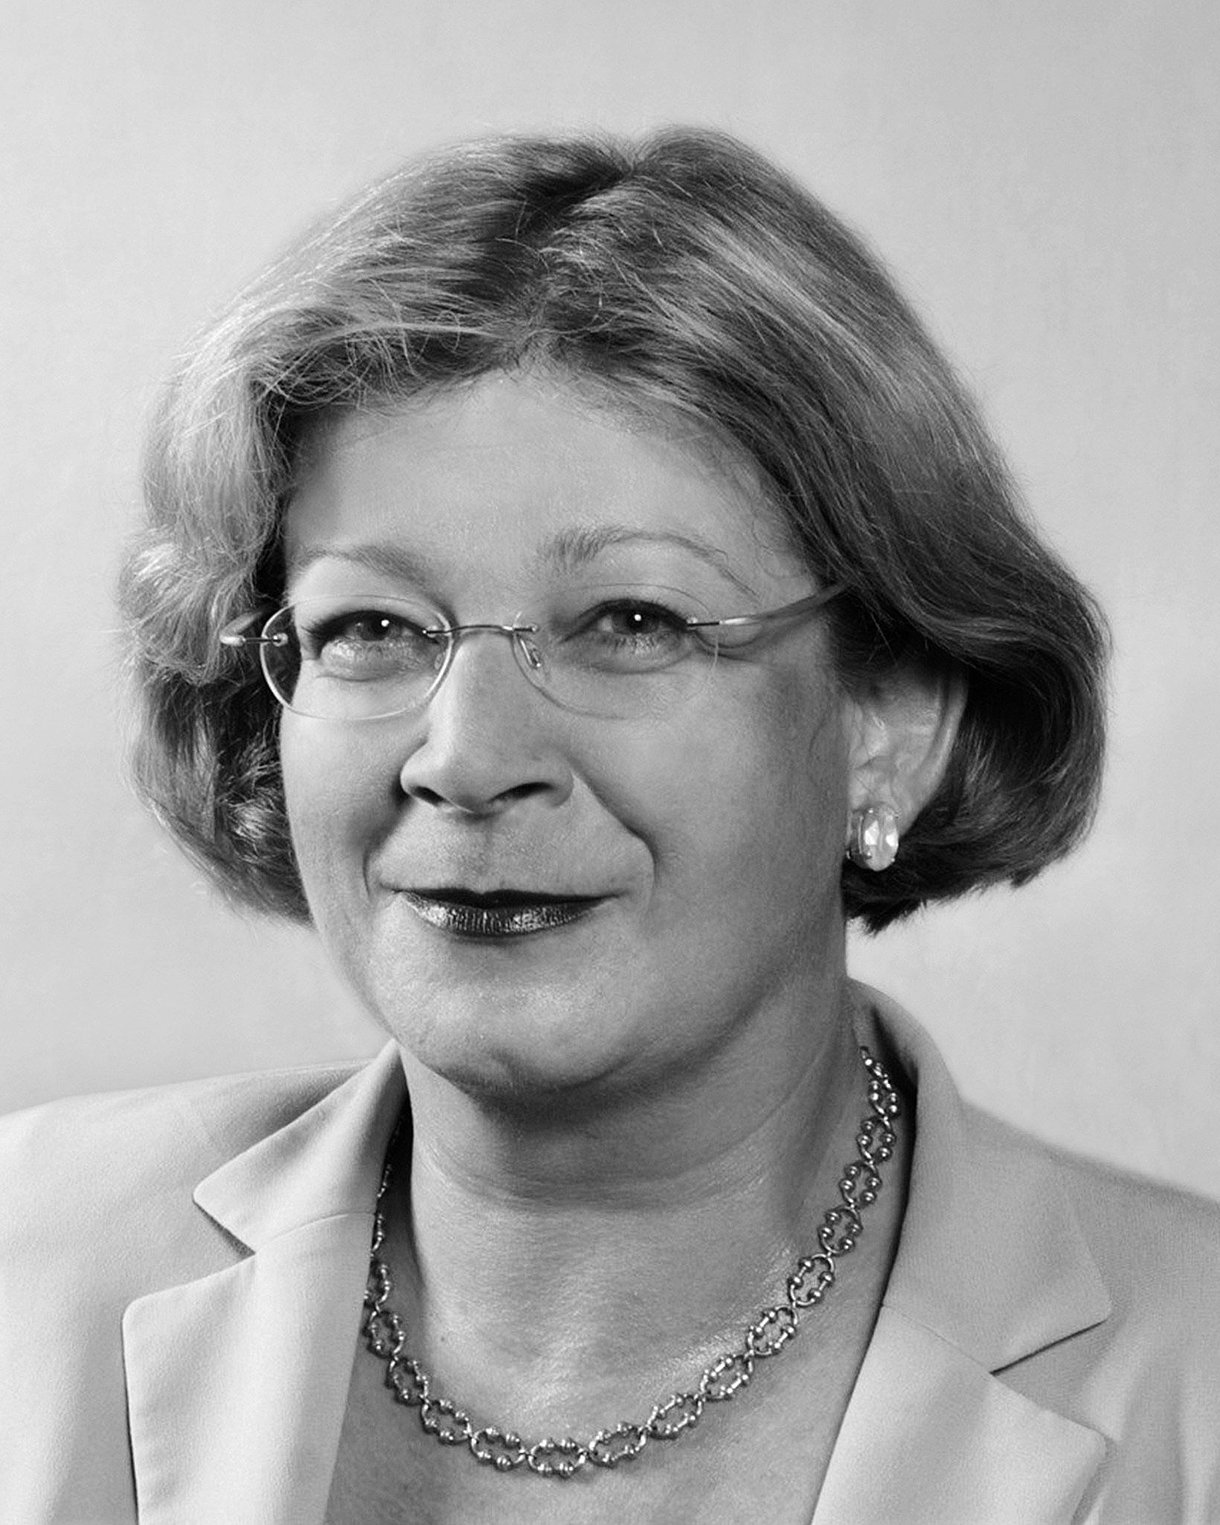 Foto: Porträtbild von Andrea Fischer, Grünen-Politikerin und ehemalige Bundesgesundheitsministerin von 1998 bis 2001